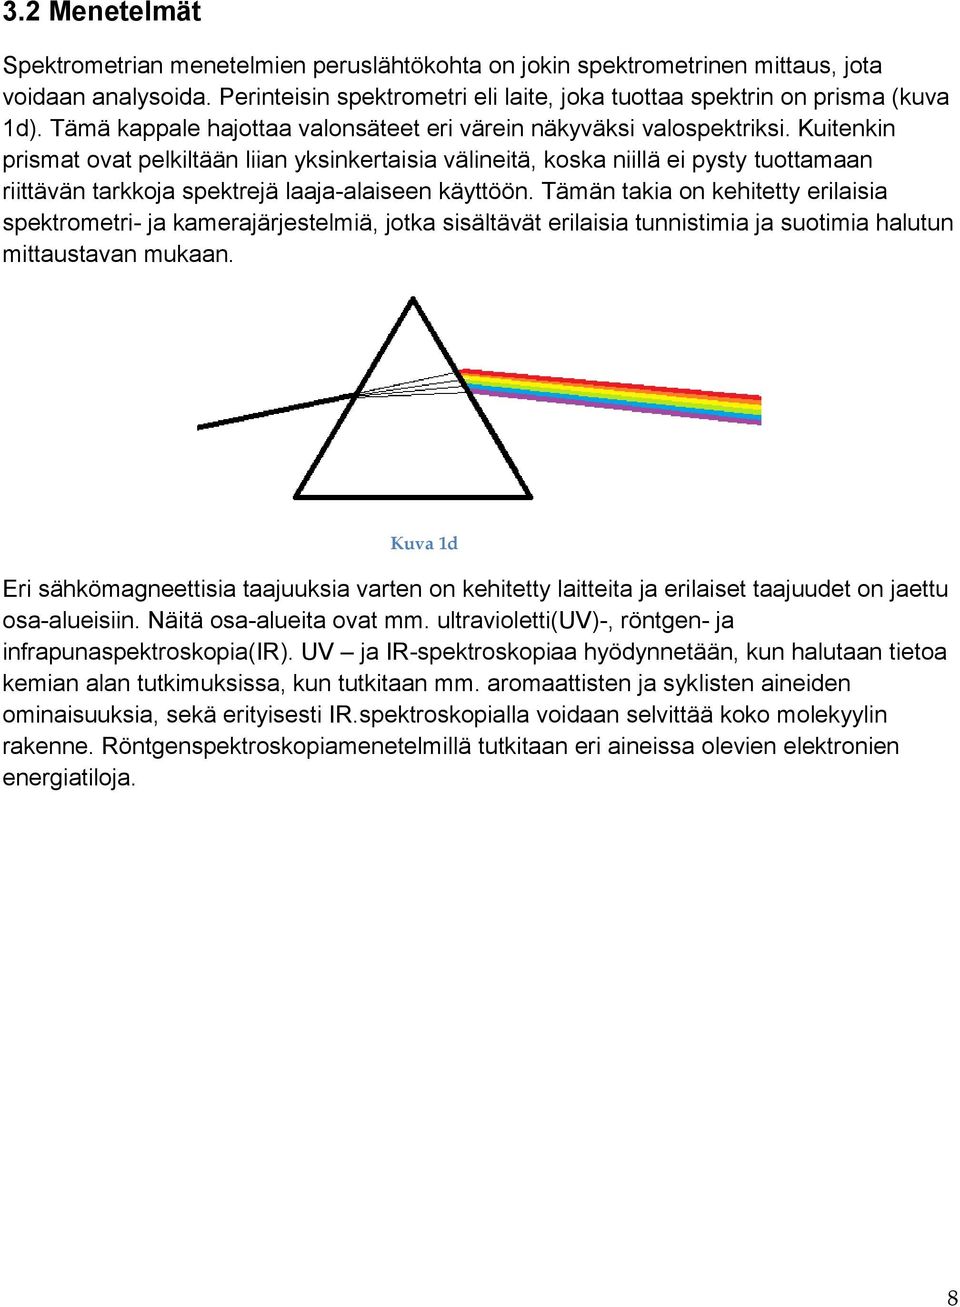 Kuitenkin prismat ovat pelkiltään liian yksinkertaisia välineitä, koska niillä ei pysty tuottamaan riittävän tarkkoja spektrejä laaja-alaiseen käyttöön.